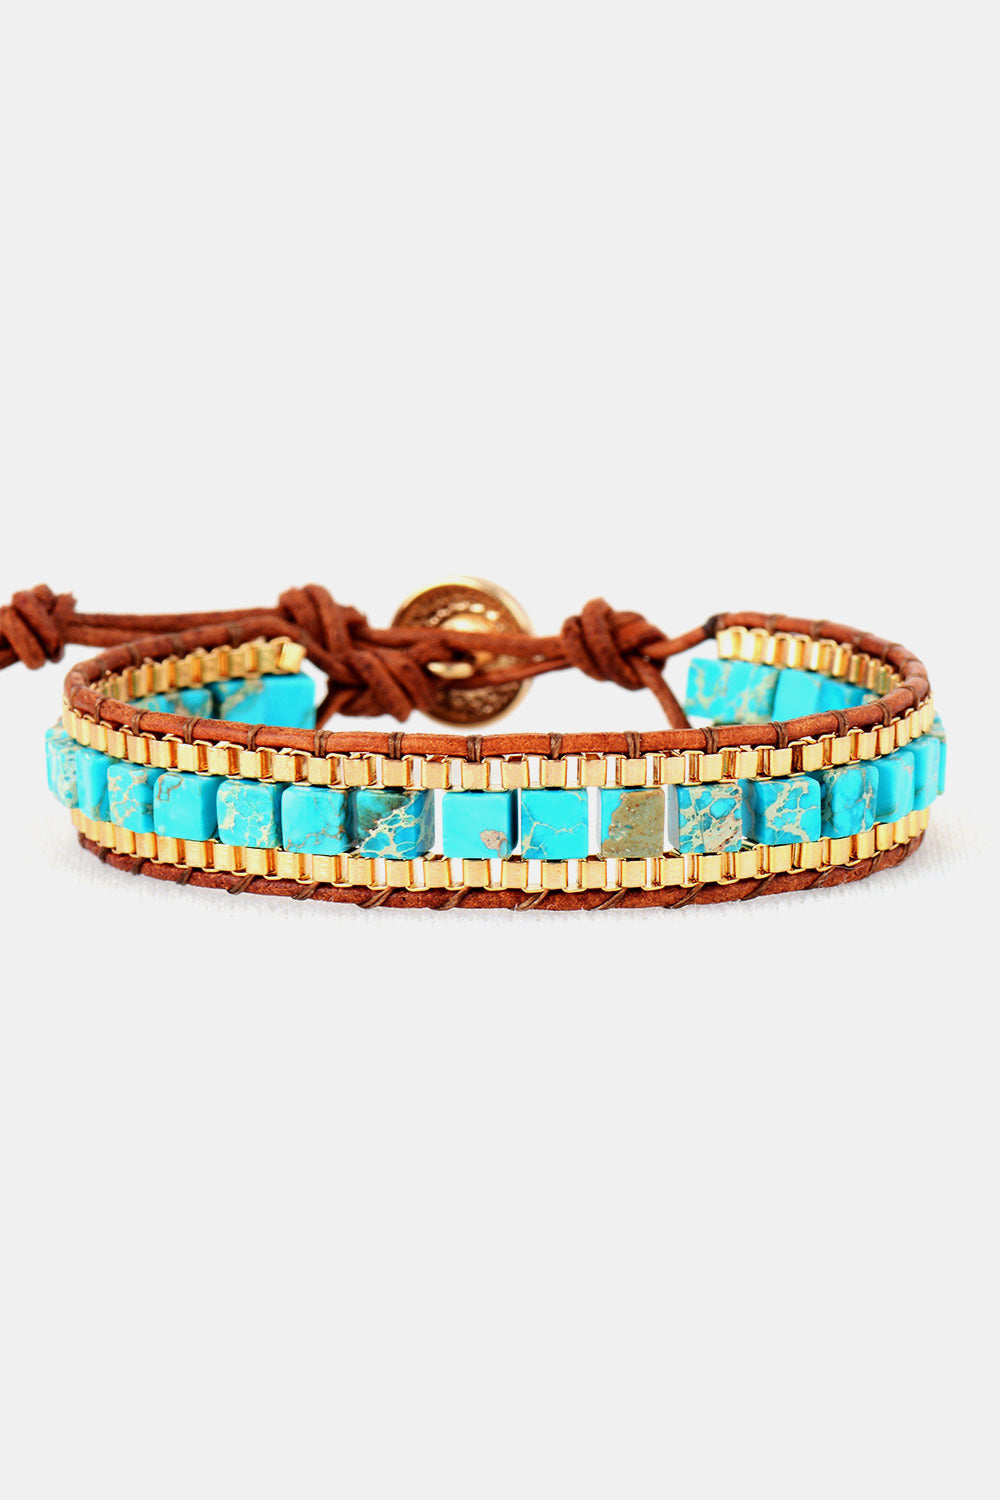 Imperial Jasper Bracelet - Blue / One Size - Women’s Jewelry - Bracelets - 1 - 2024